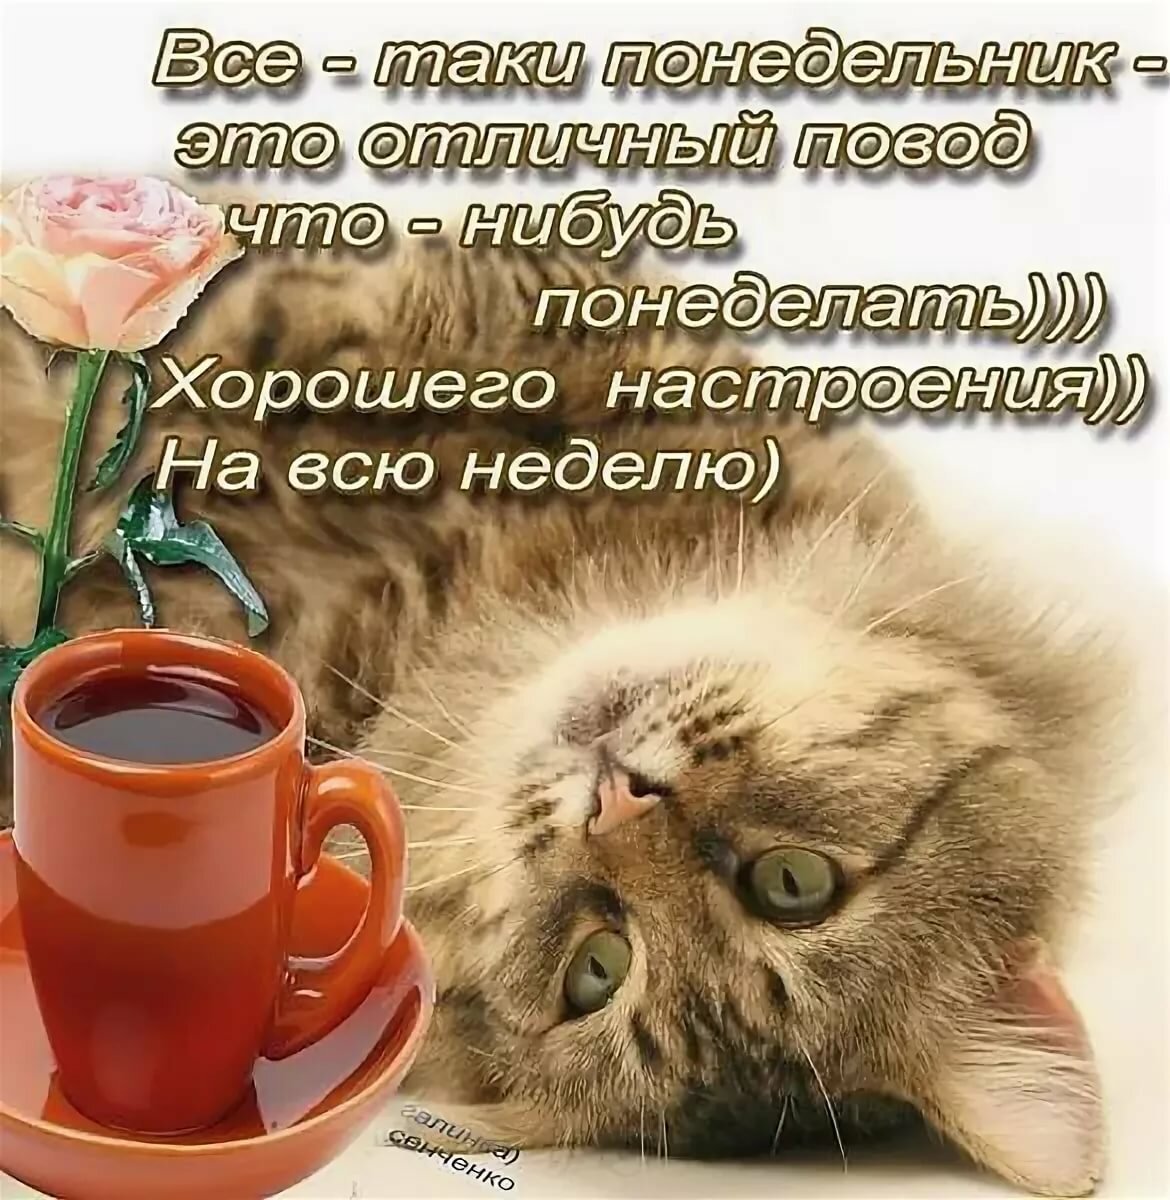 Кот лежит на спине рядом с кружкой чая и розой, с текстом пожелания хорошего настроения на всю неделю.